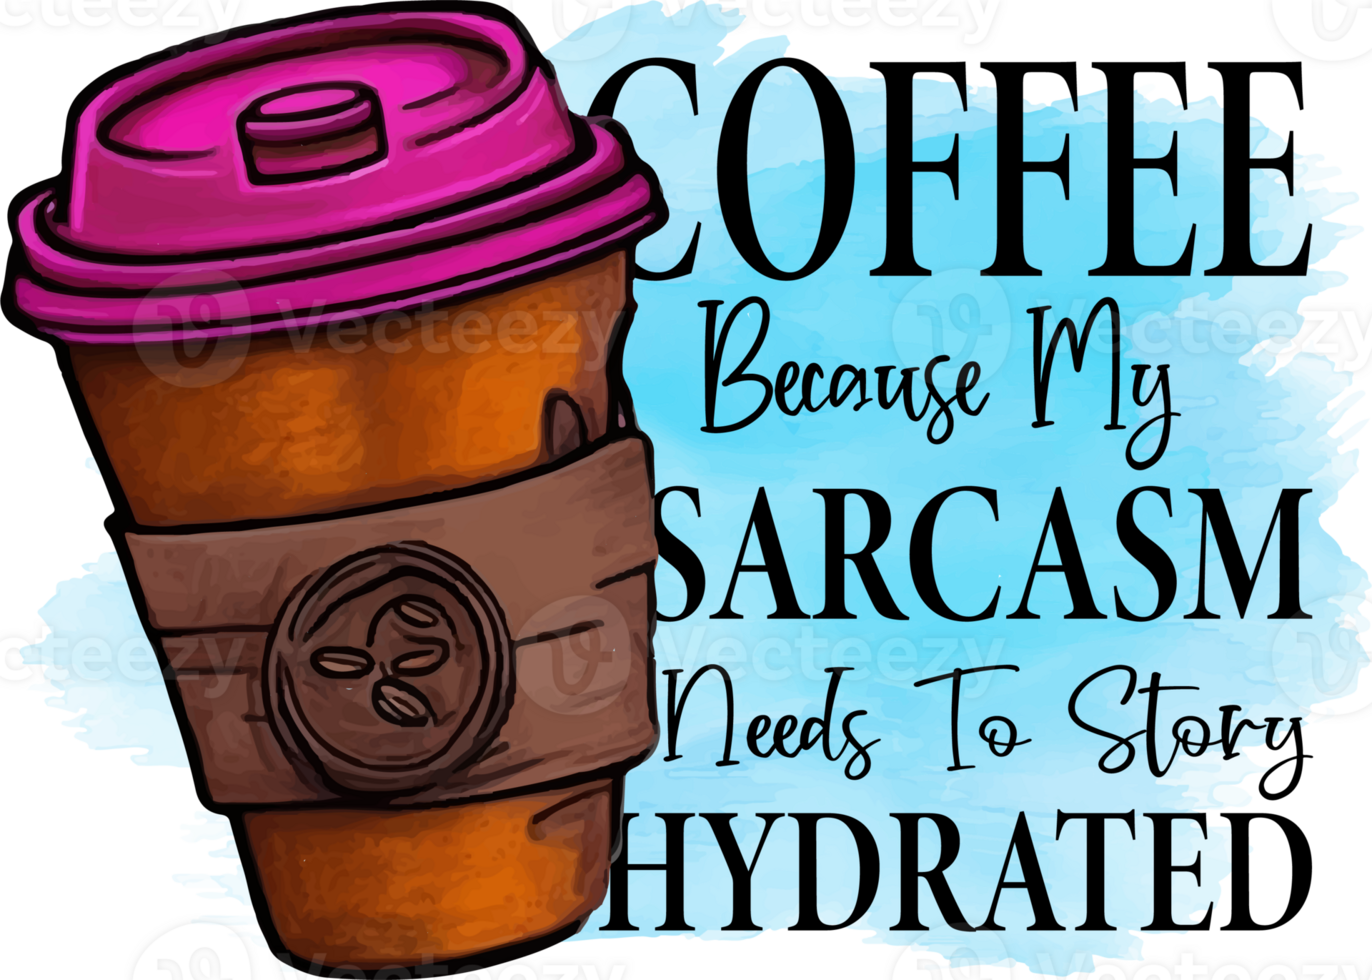 café porque mi sarcasmo necesidades a historia hidratado sublimación diseño, Perfecto en t camisas, tazas, señales, tarjetas y mucho más png